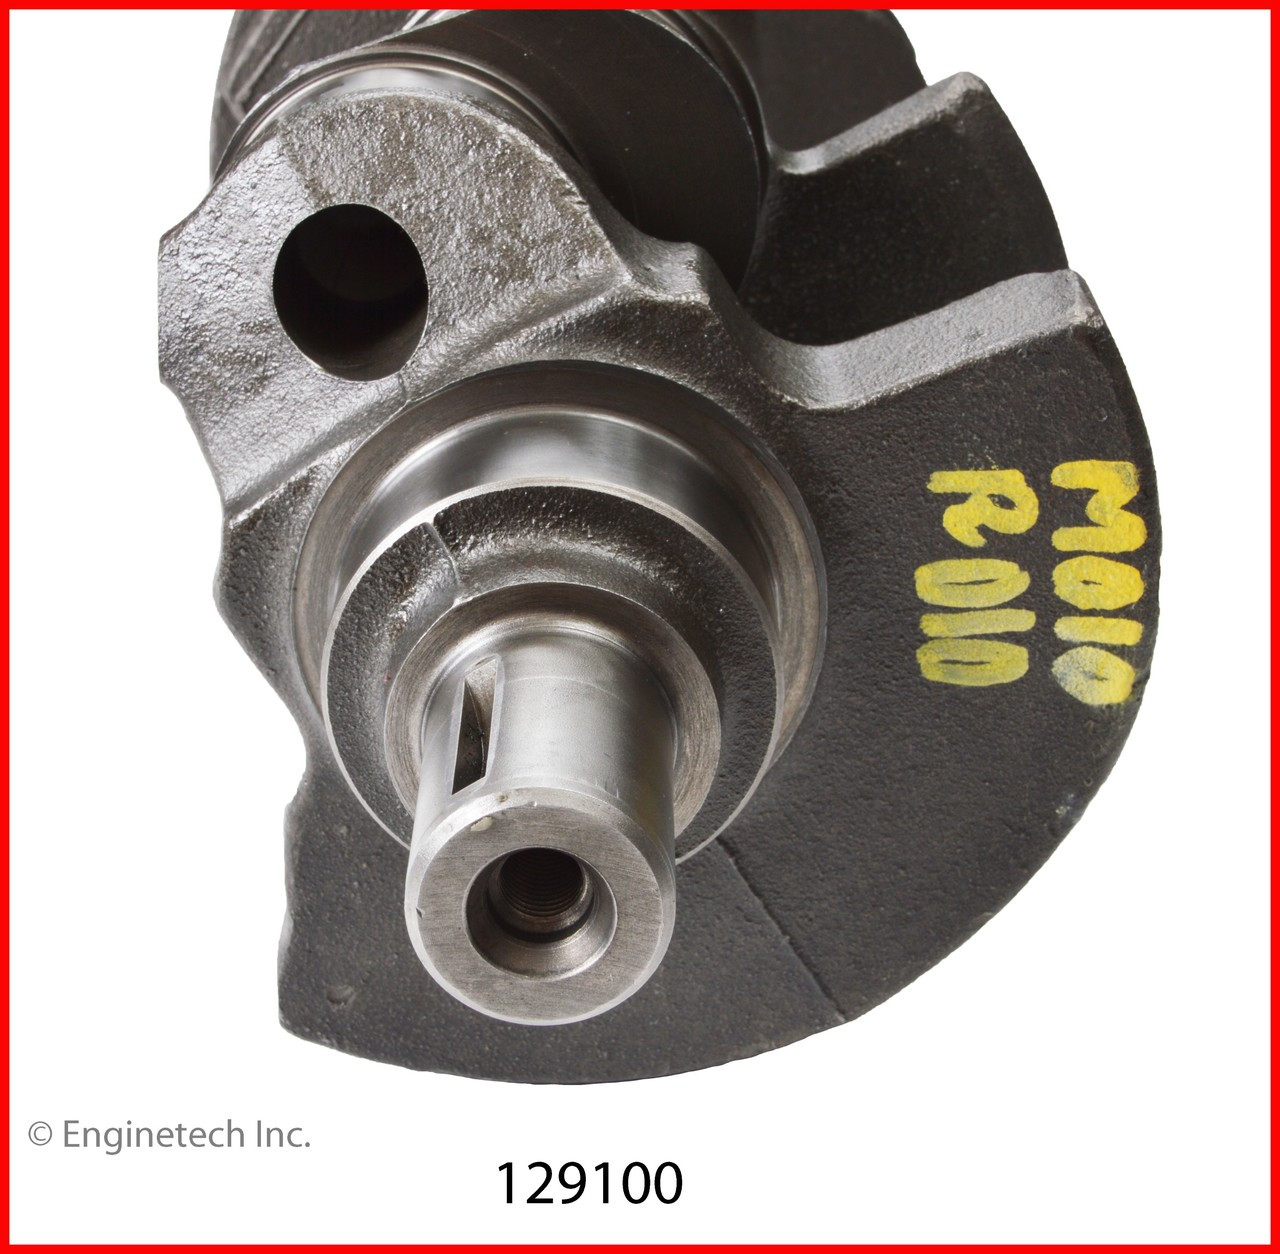 Crankshaft Kit - 1997 GMC K1500 4.3L (129100.K142)